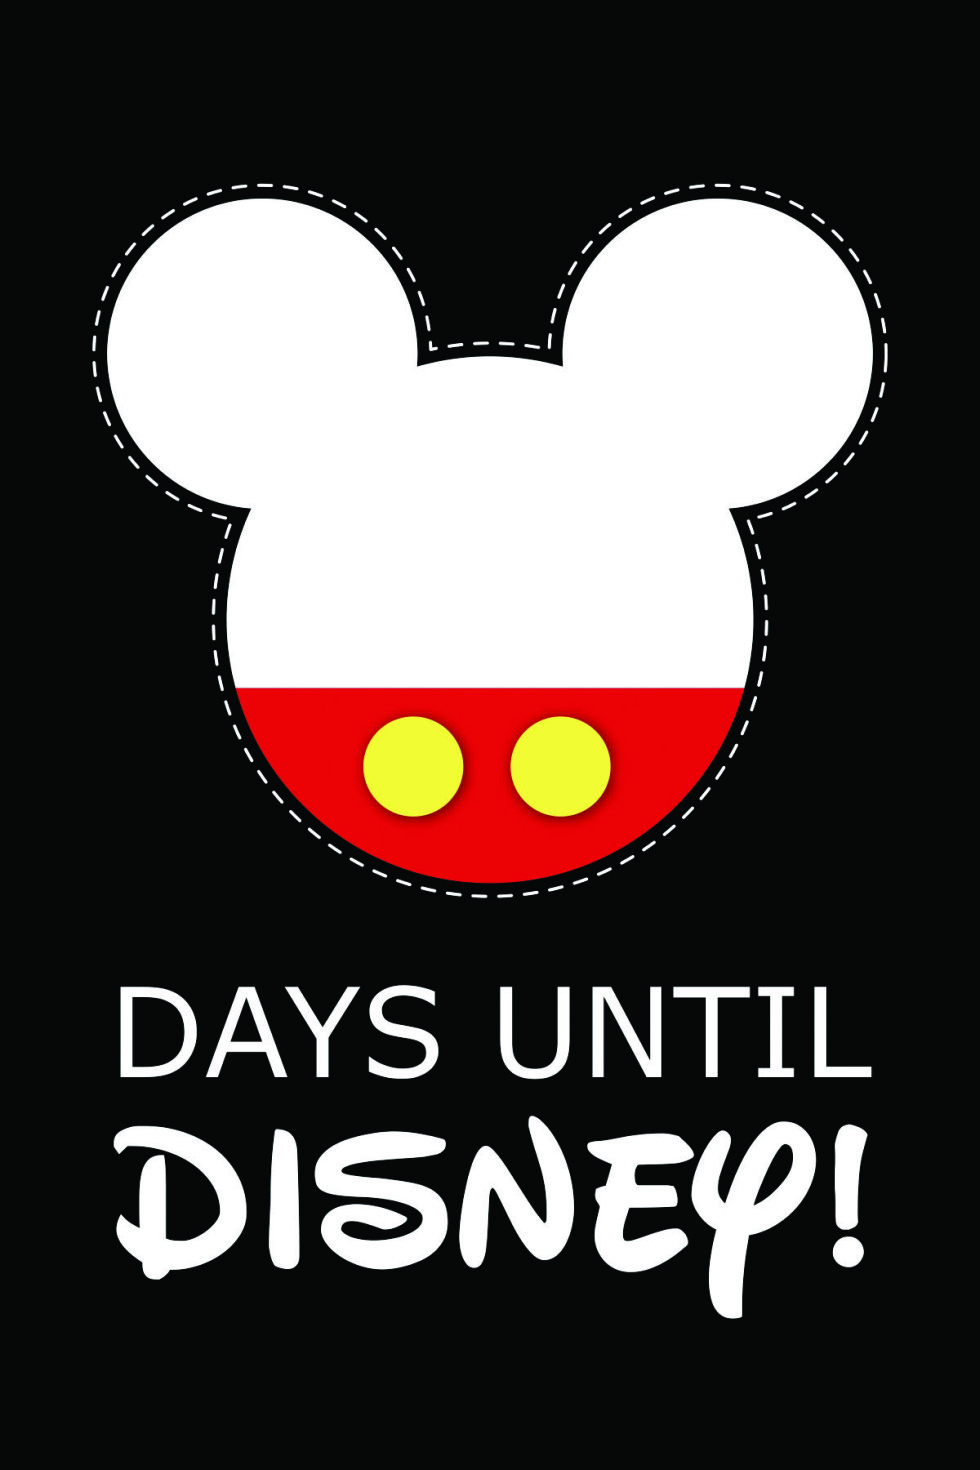 10 Fun Printable Disney Countdown Calendars | Kittybabylove throughout Disney Countdown Calendar Printable